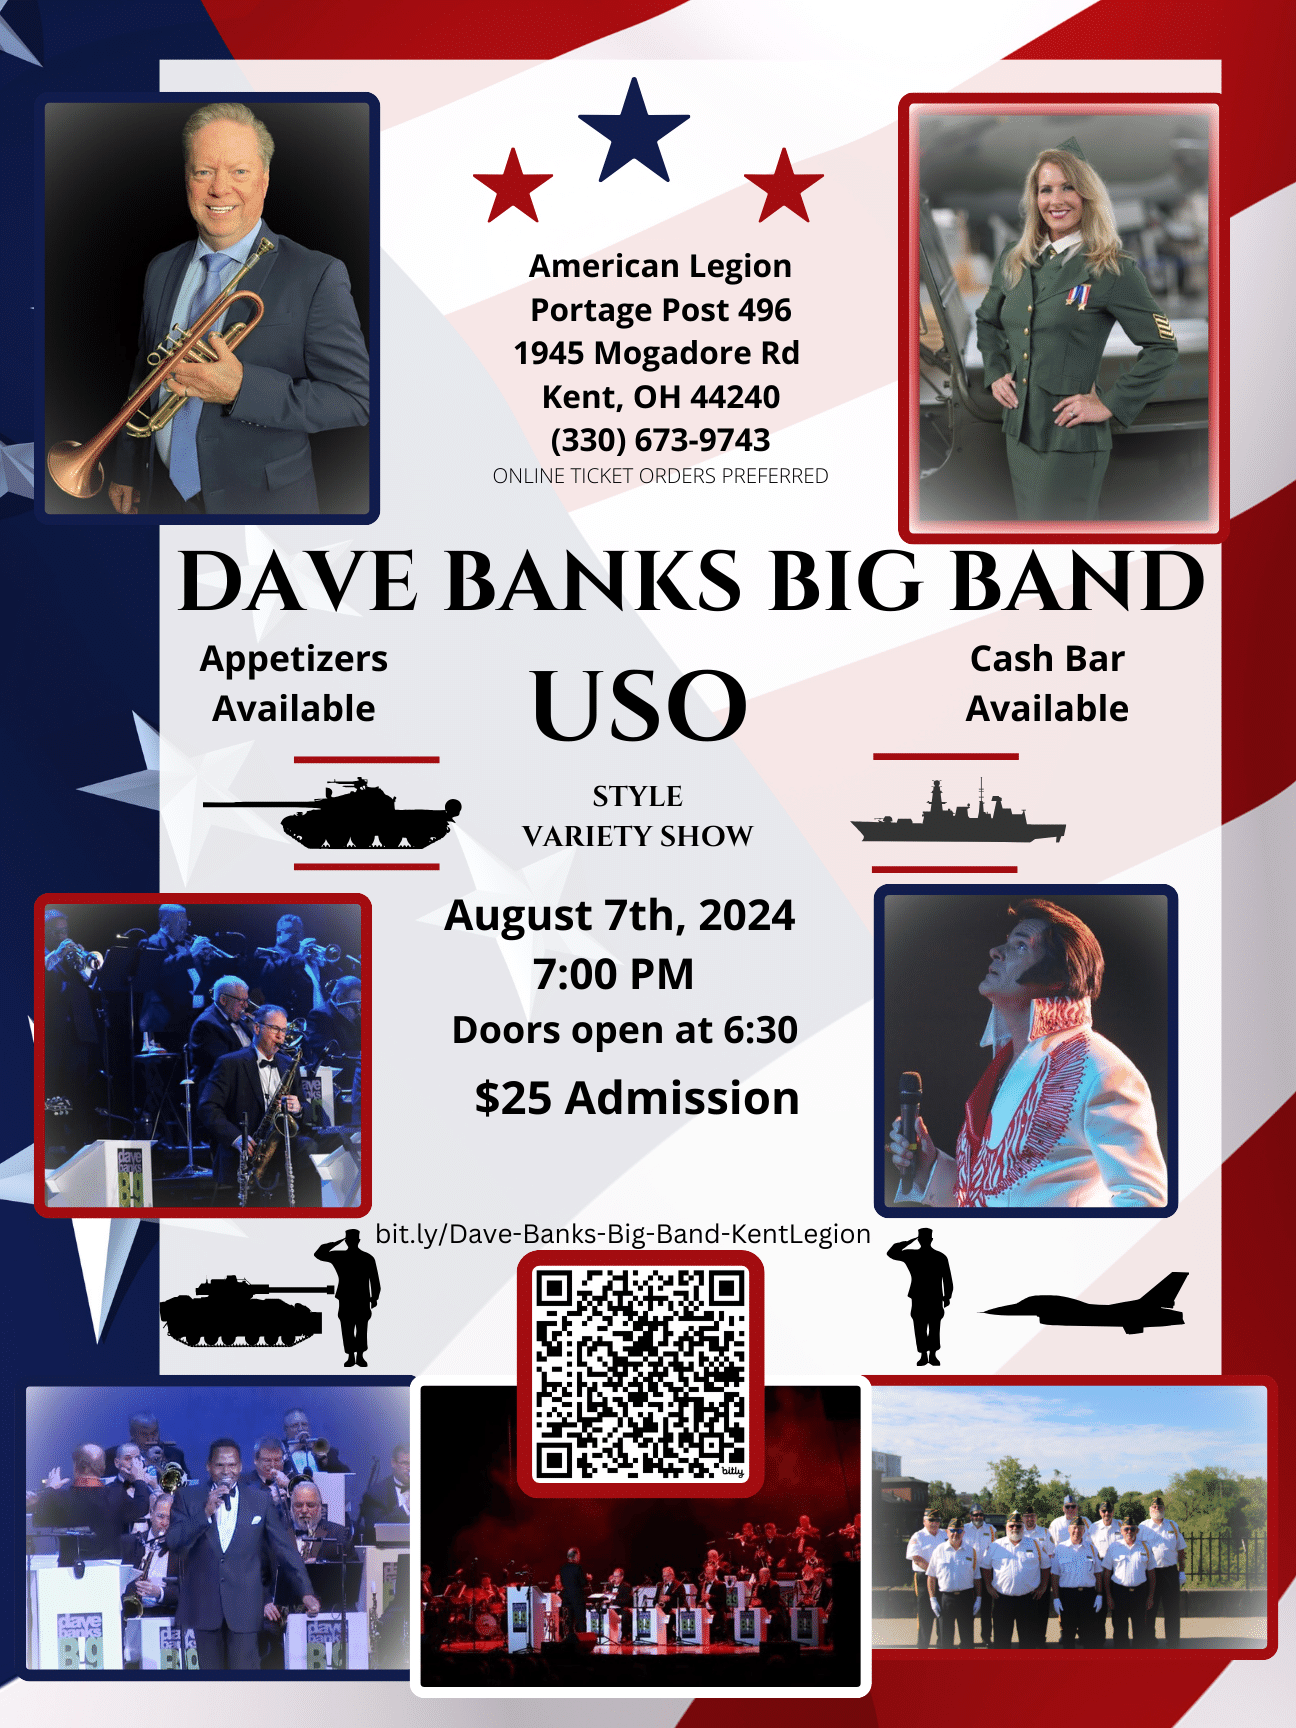 Dave Banks Big Band Show (USO Tour Style) American Legion, Kent on mai 25, 19:00@Portage Post Kent American Legion - Achetez des billets et obtenez des informations sur American Legion Kent, and Krack Ups  